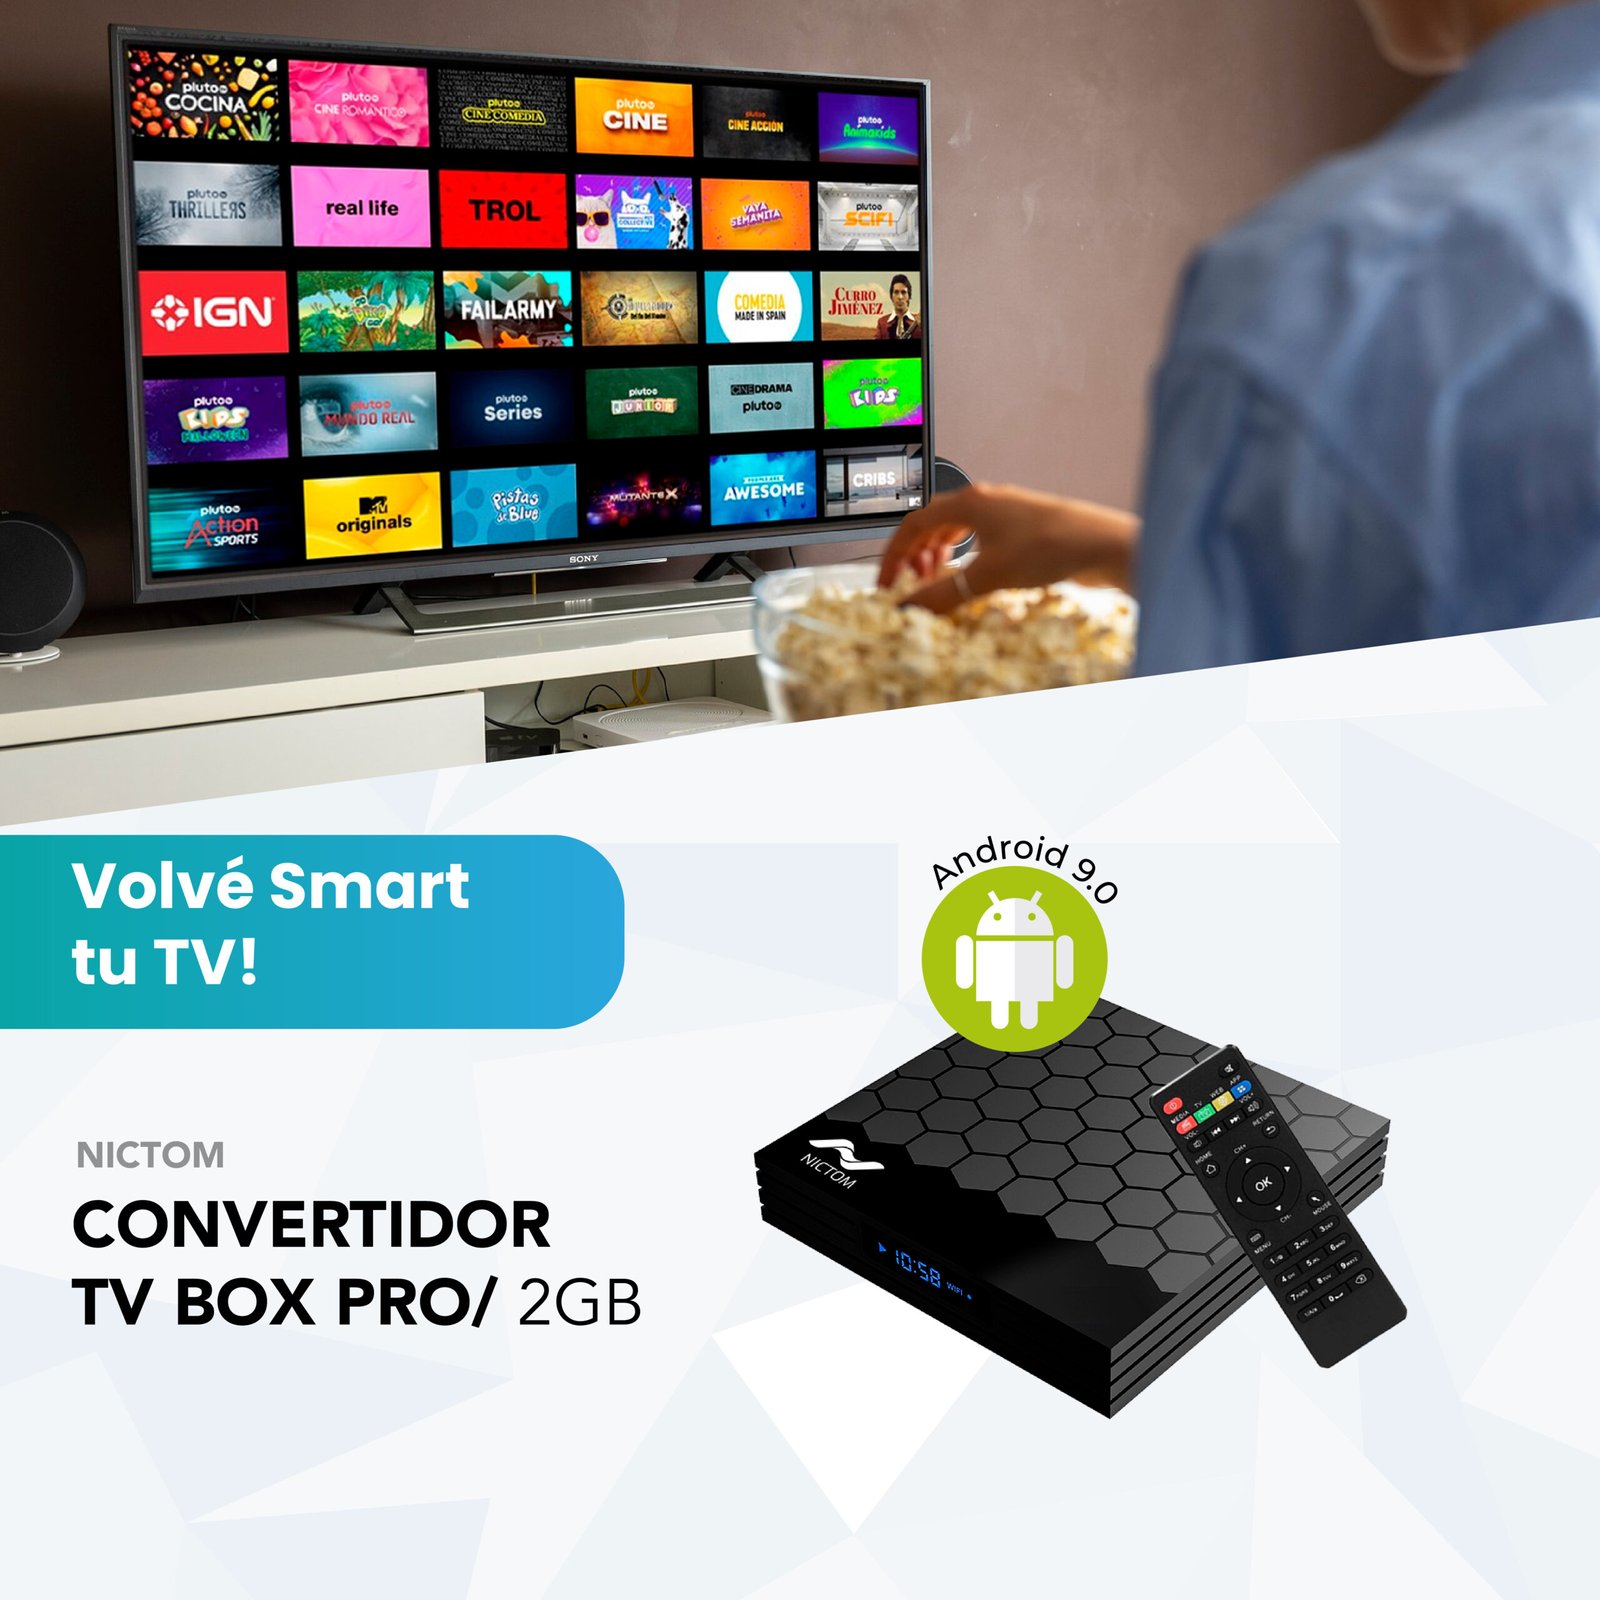 Convertidor Smart TV Nictom 1GB RAM T1PRO + Conversor Adaptador Nictom HDMI  a VGA + Soporte de TV Nictom STVSP02 14 A 42